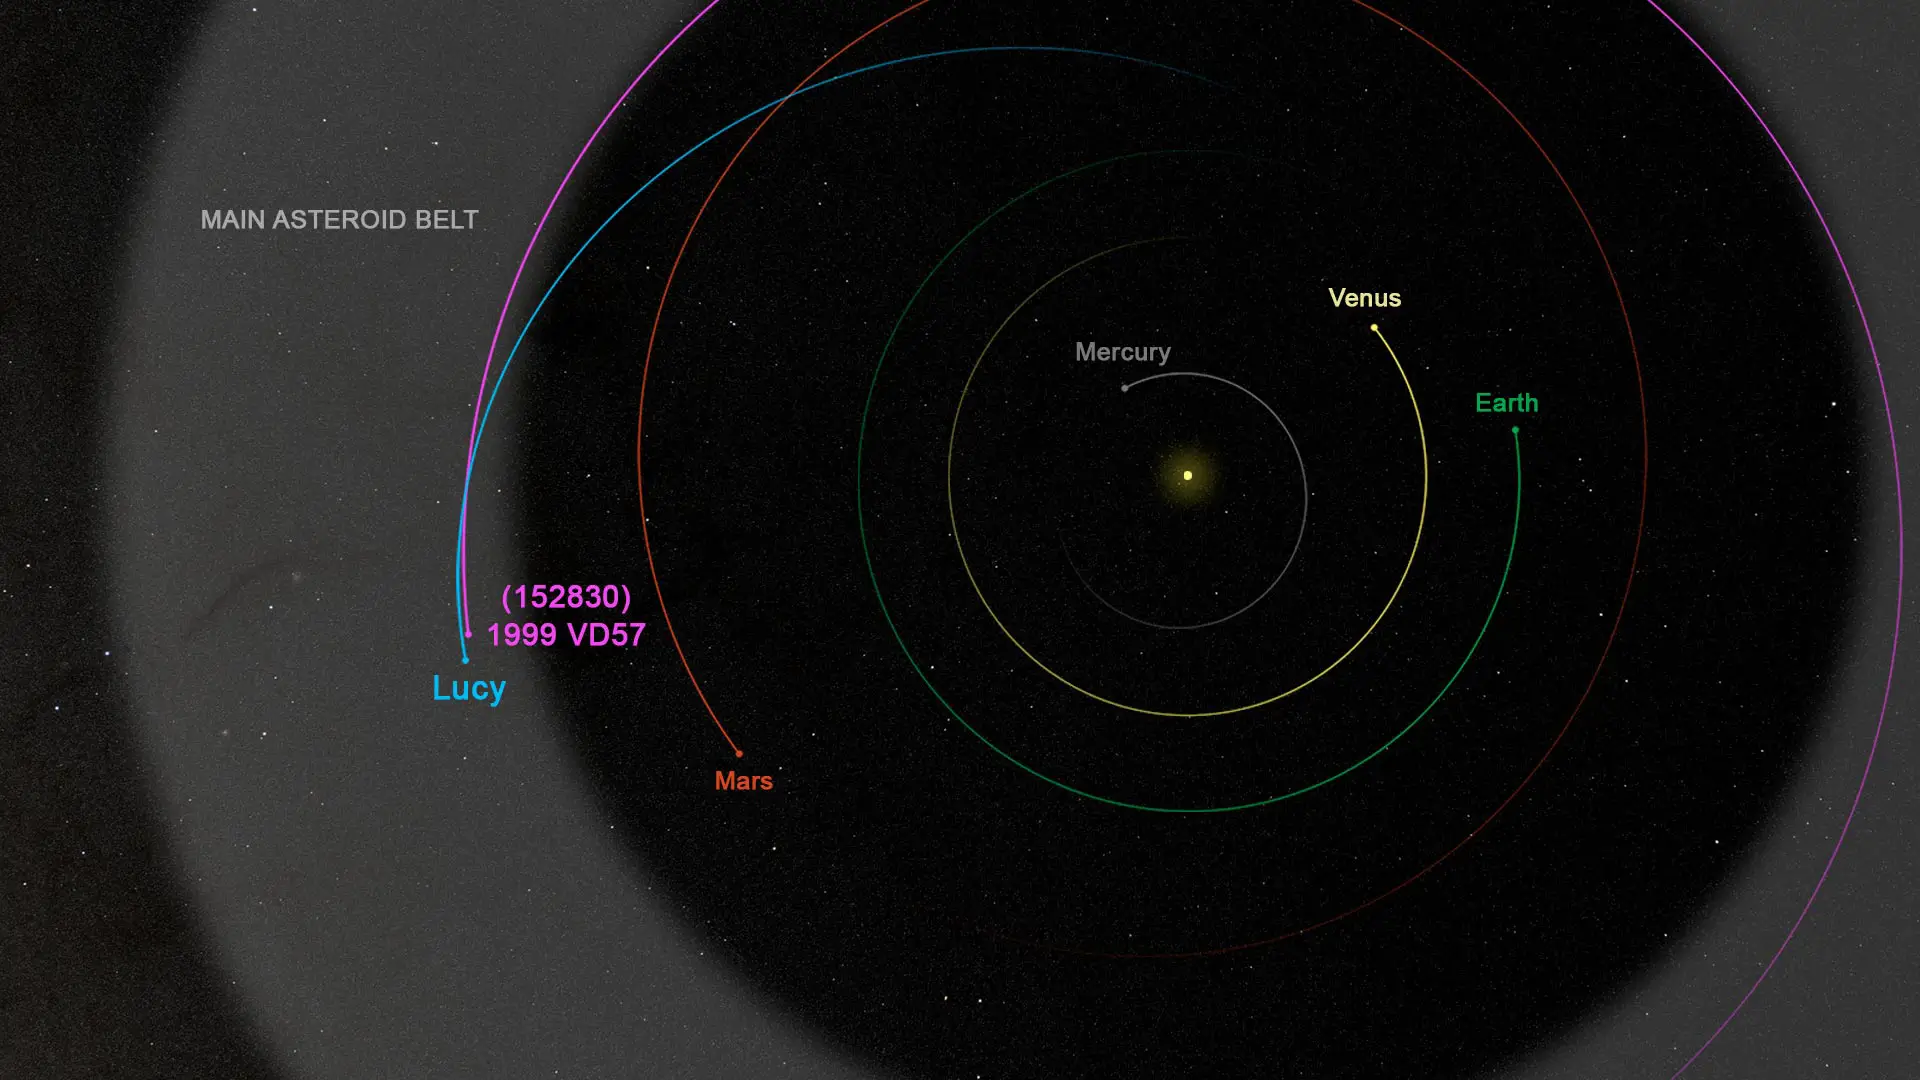 Миссия "Люси" посетит дополнительно еще один астероид главного пояса